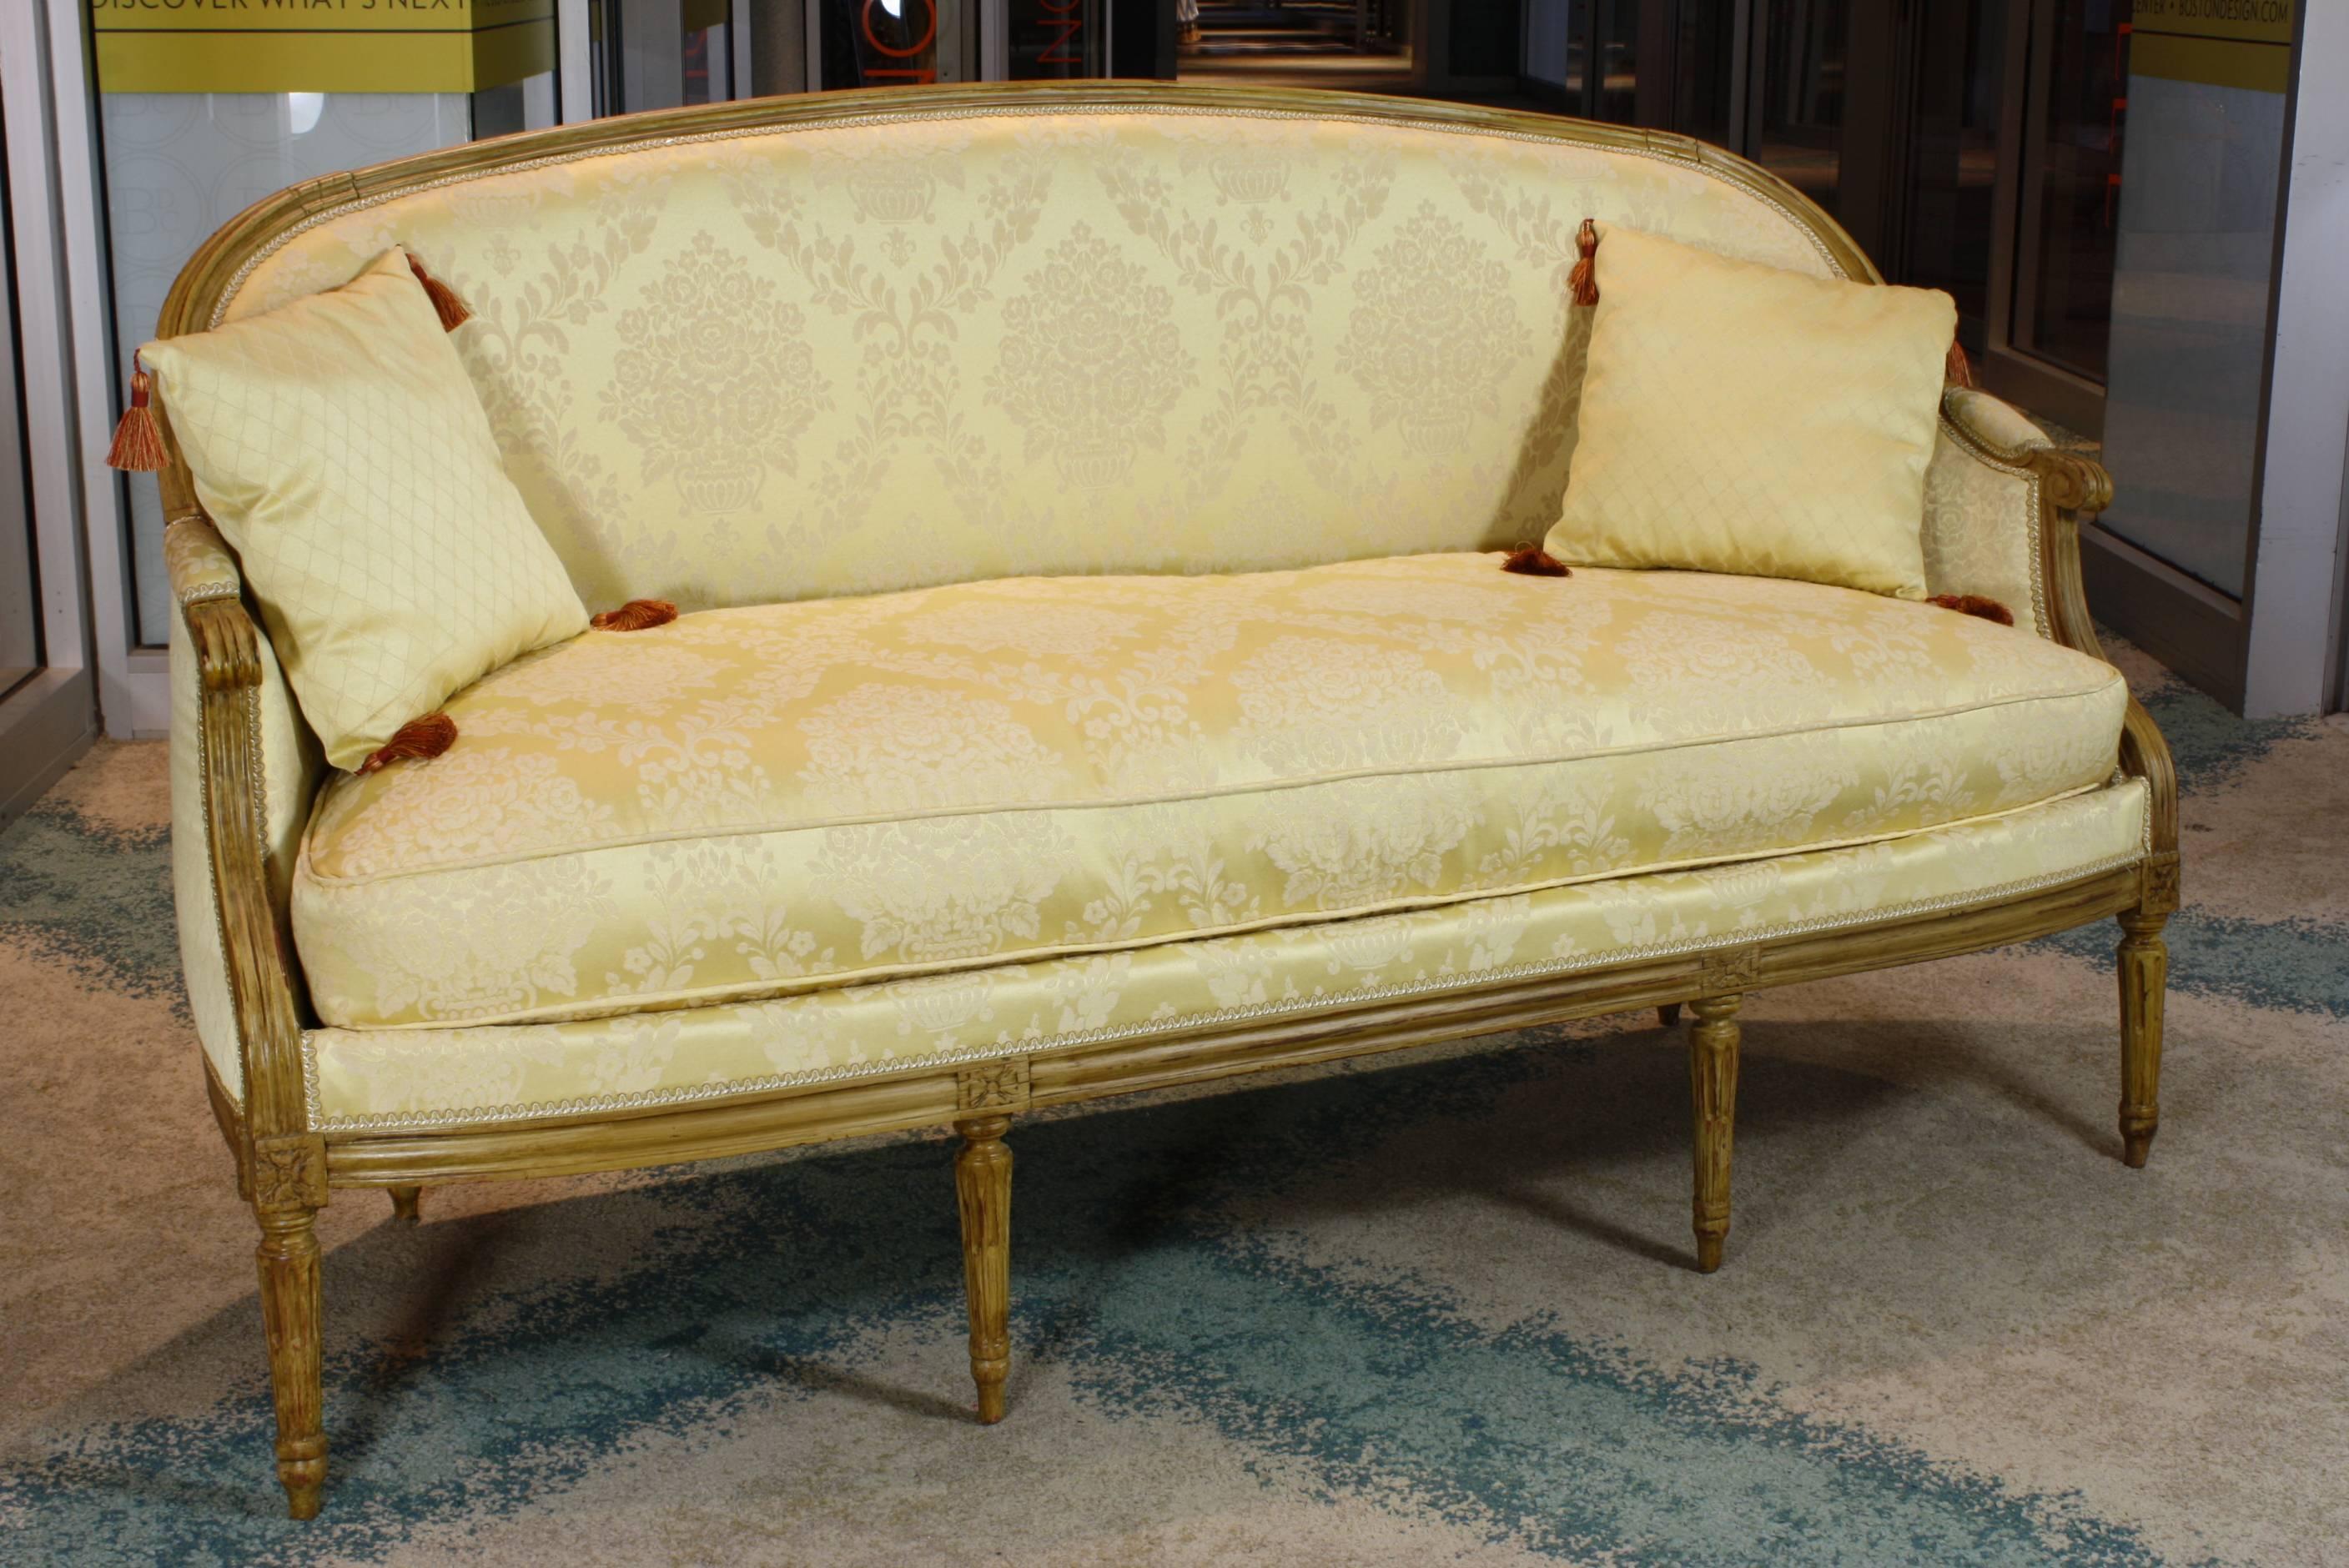 Élégant canapé néoclassique d'époque Louis XVI, avec coussin d'assise séparé garni de duvet, deux petits coussins gommés, cadre peint et pieds cannelés fuselés.  Le canapé a été en grande partie retapissé, avec un nouveau tissu jaune à motif de